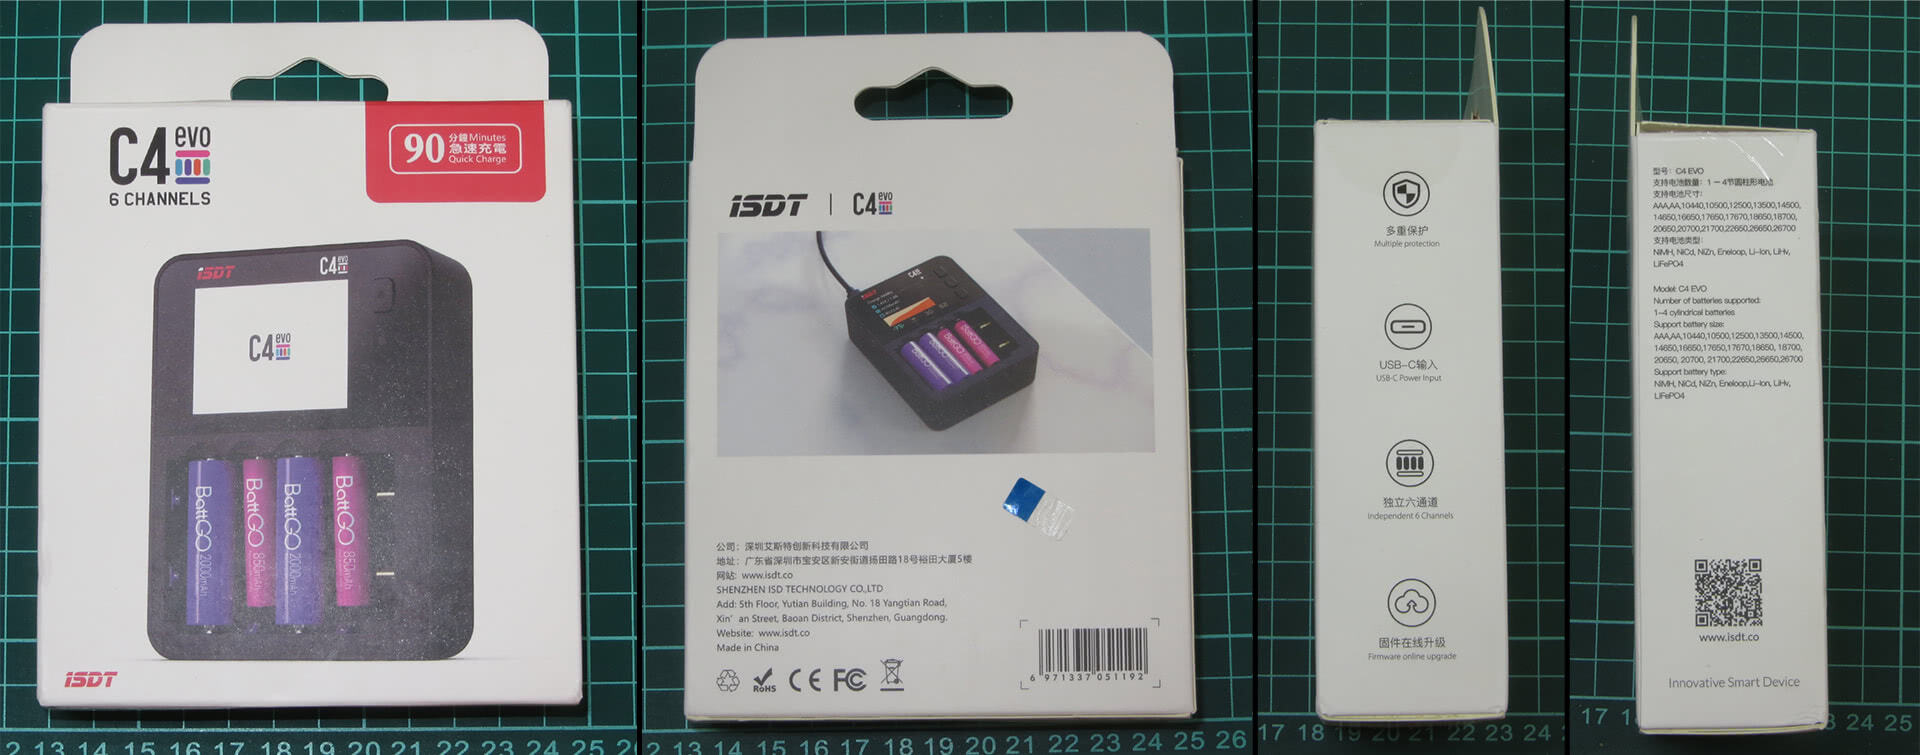 Упаковка ISDT C4 EVO